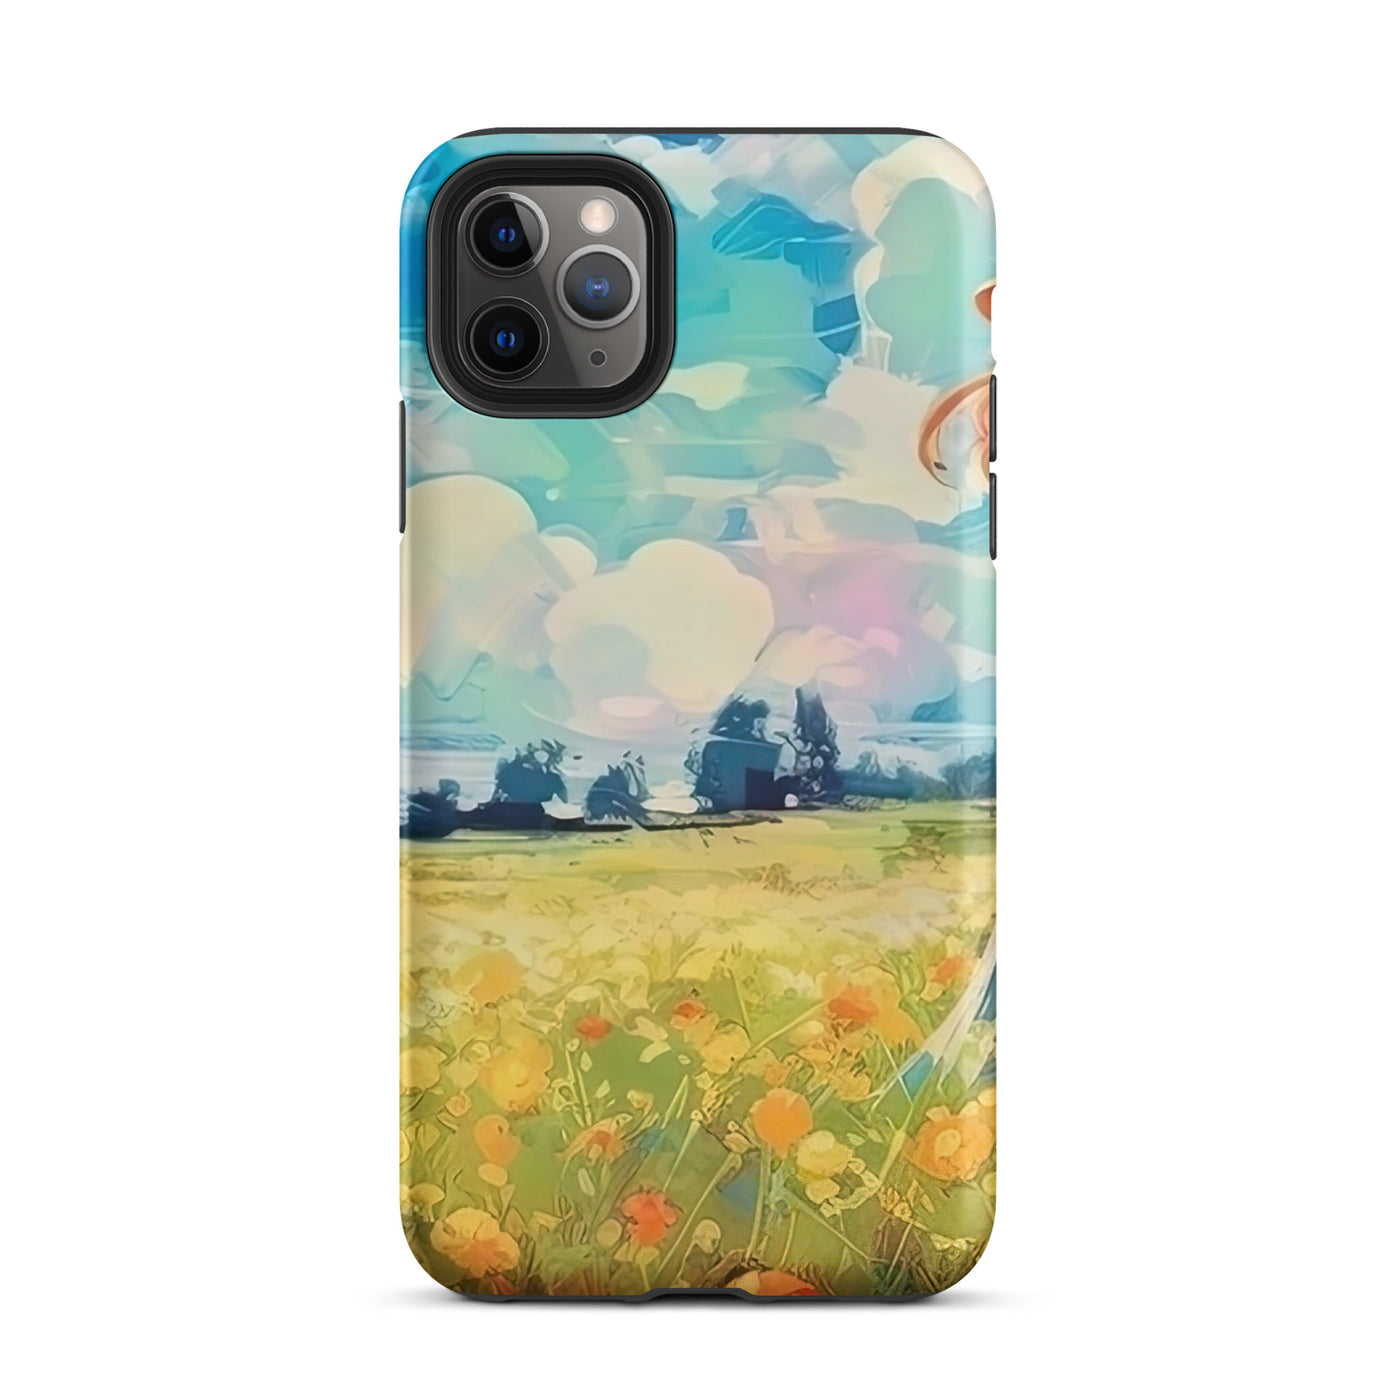 Dame mit Hut im Feld mit Blumen - Landschaftsmalerei - iPhone Schutzhülle (robust) camping xxx iPhone 11 Pro Max